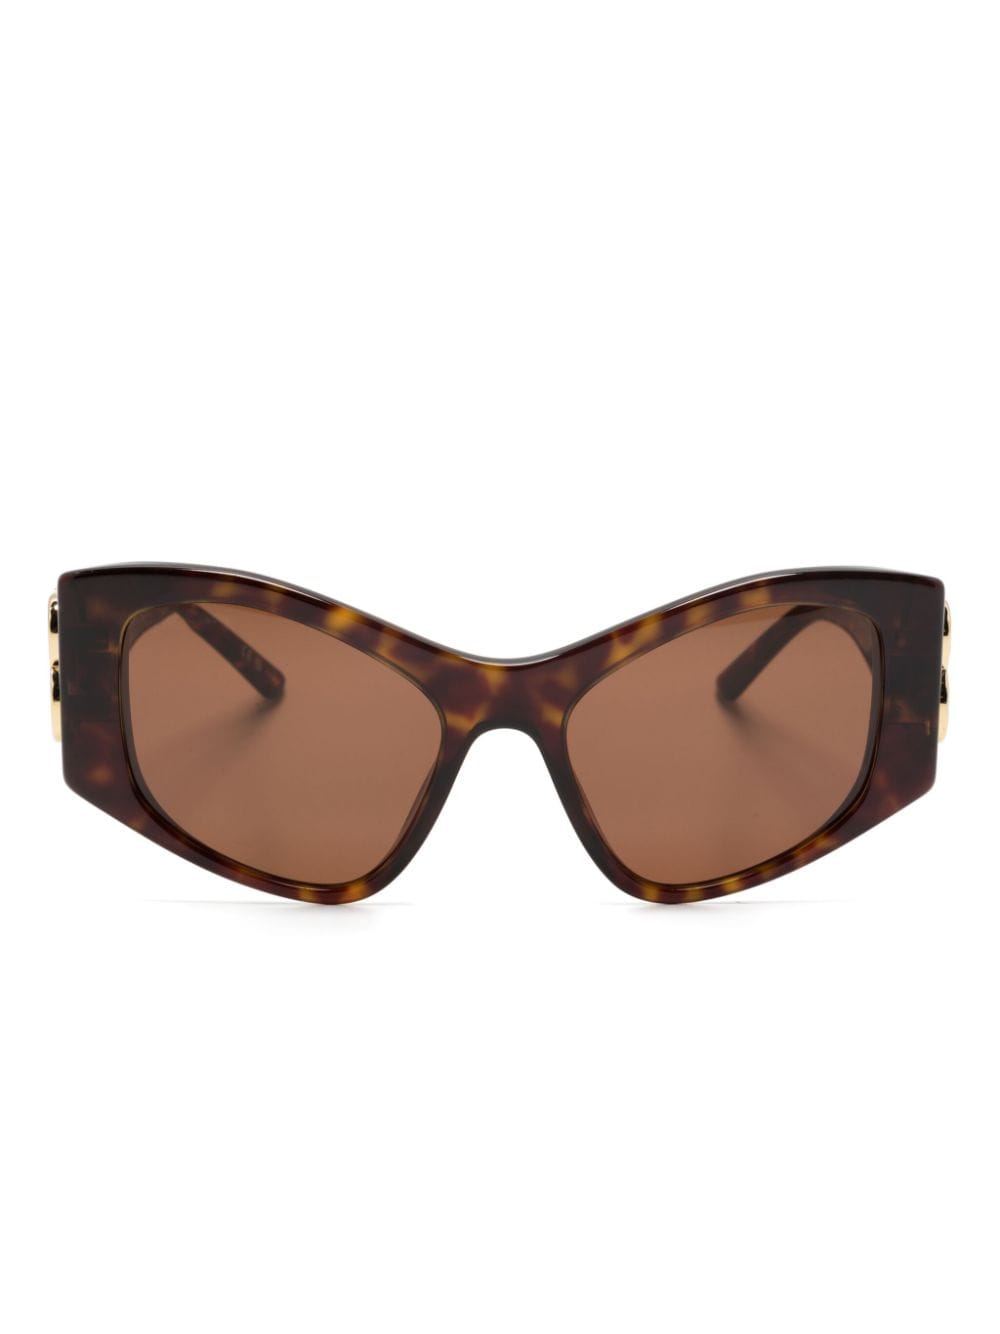 Balenciaga Eyewear Dynasty XL D-frame sunglasses - Marrone